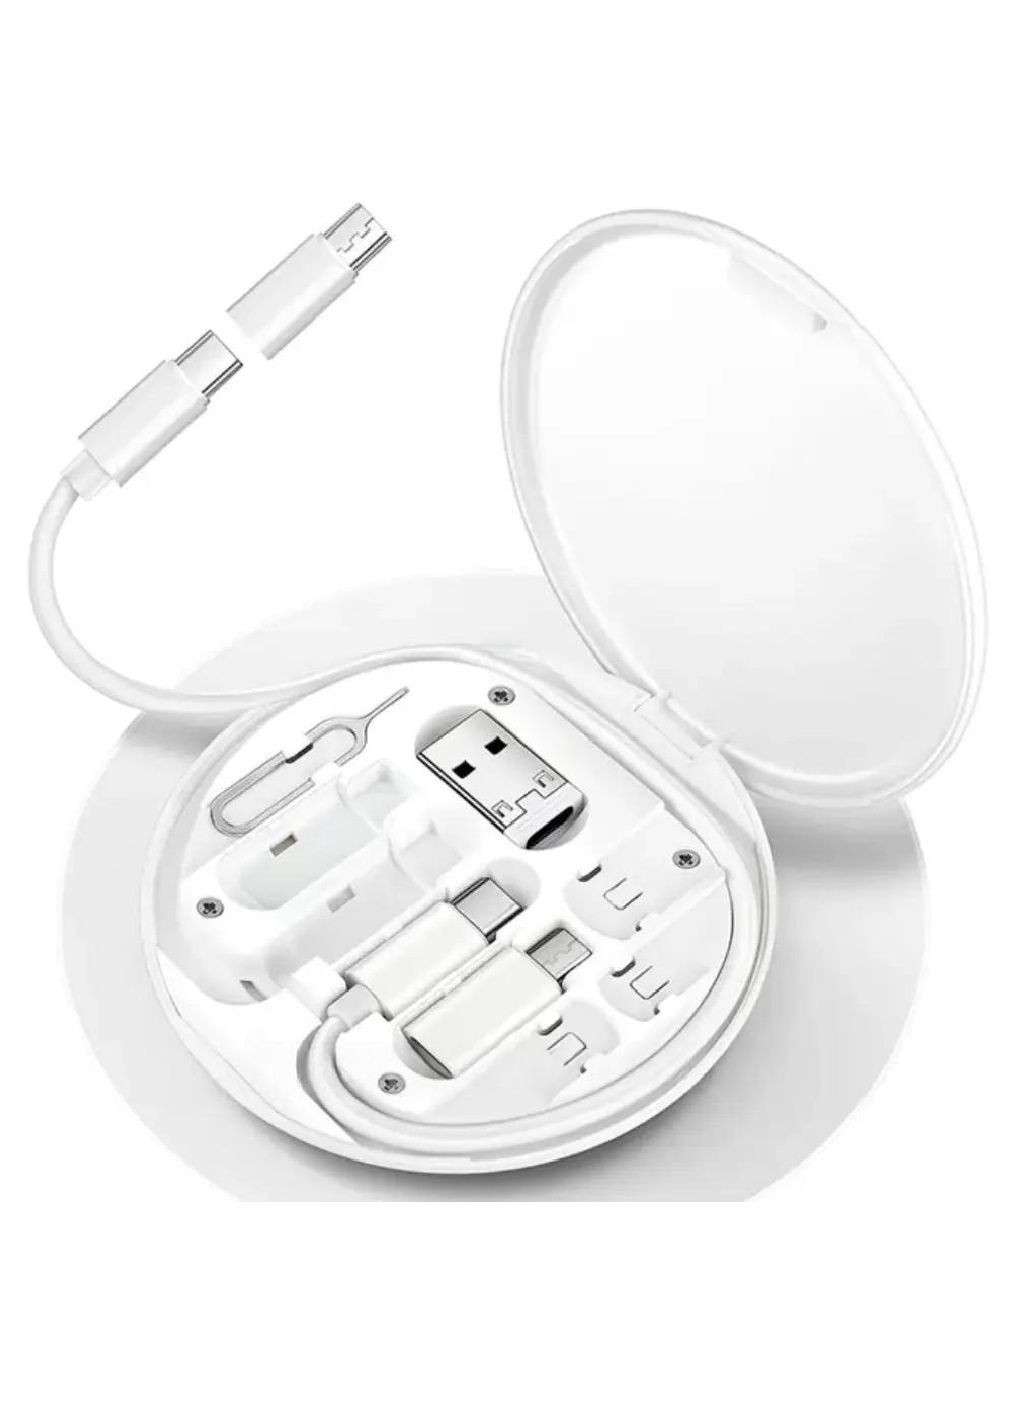 Комплект набор в чехле кейсе кабель для зарядки телефона передачи данных дата кабель (476714-Prob) Белый Unbranded (289200923)